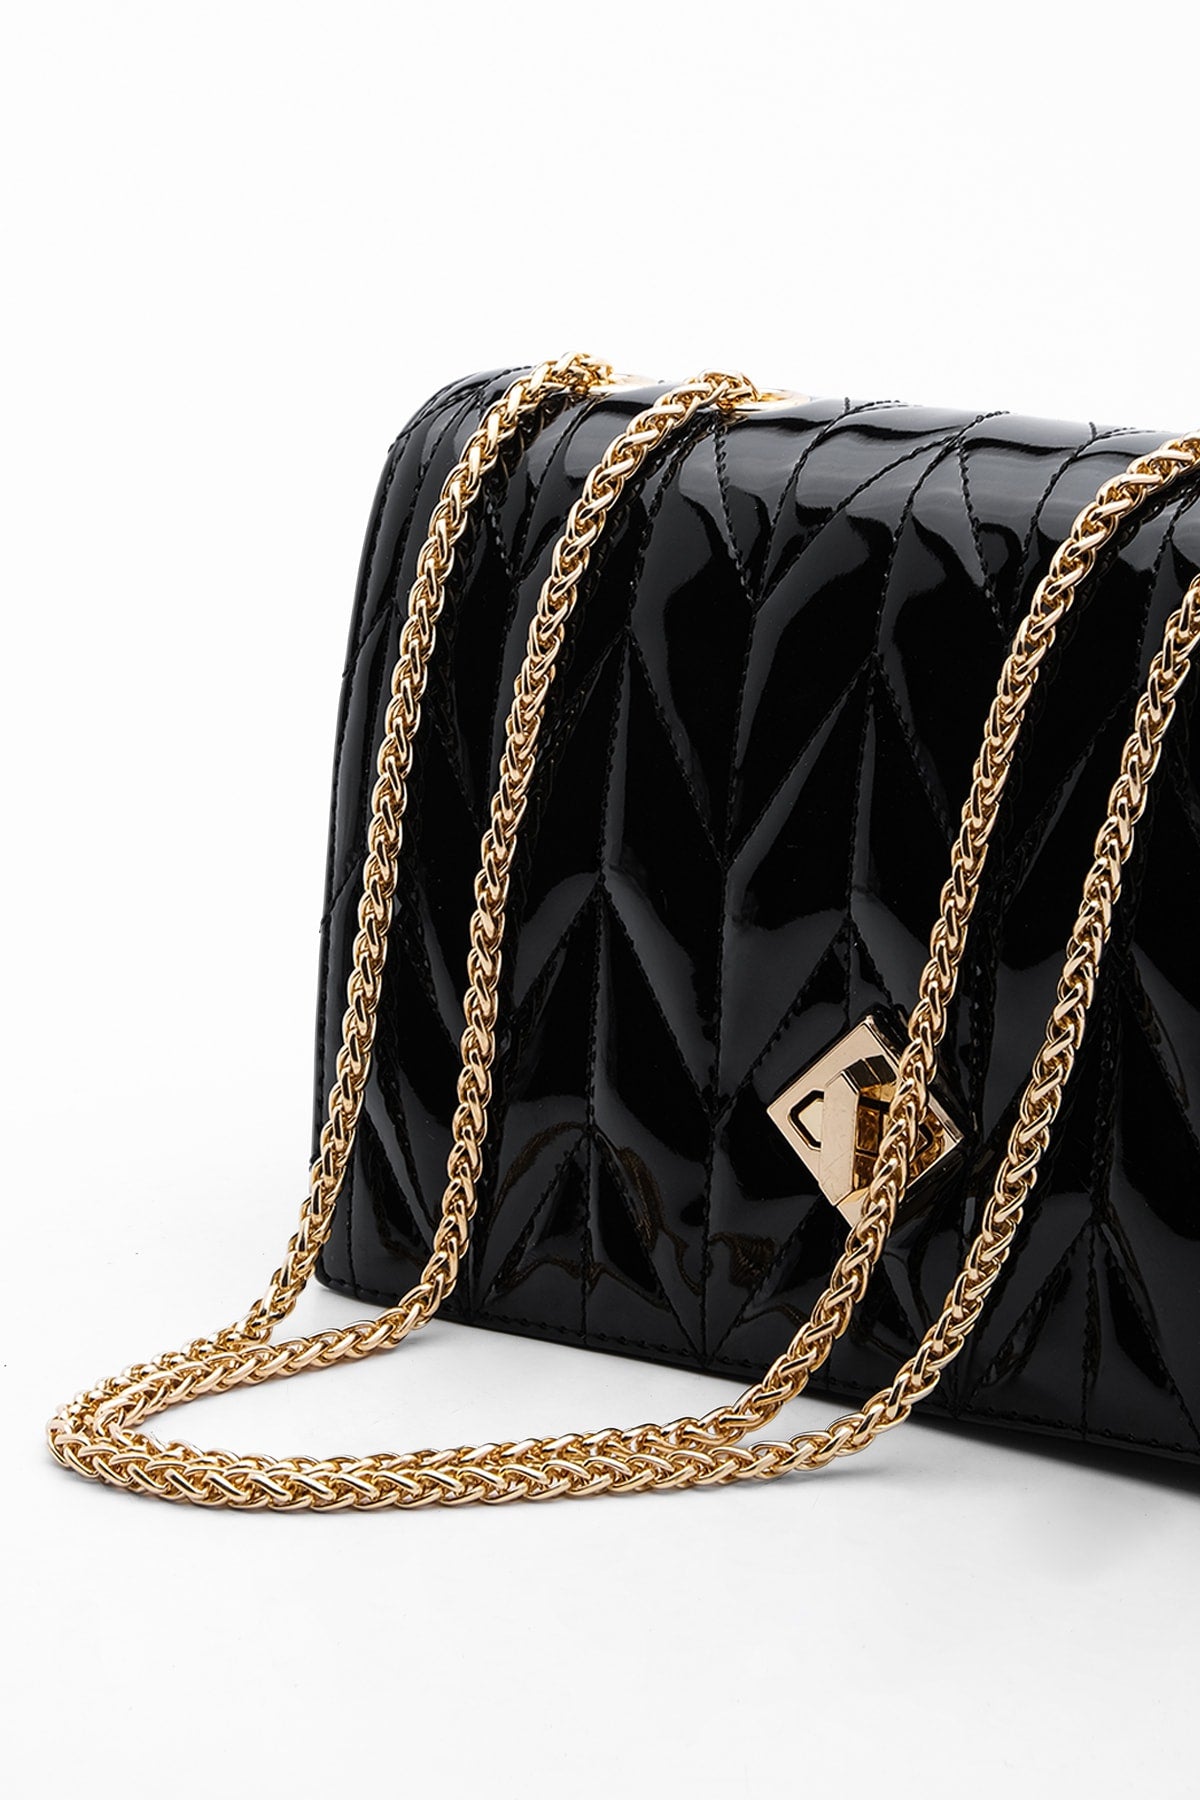 Women's Gold Color Chain Shoulder Bag Delbin Black Patent Leather